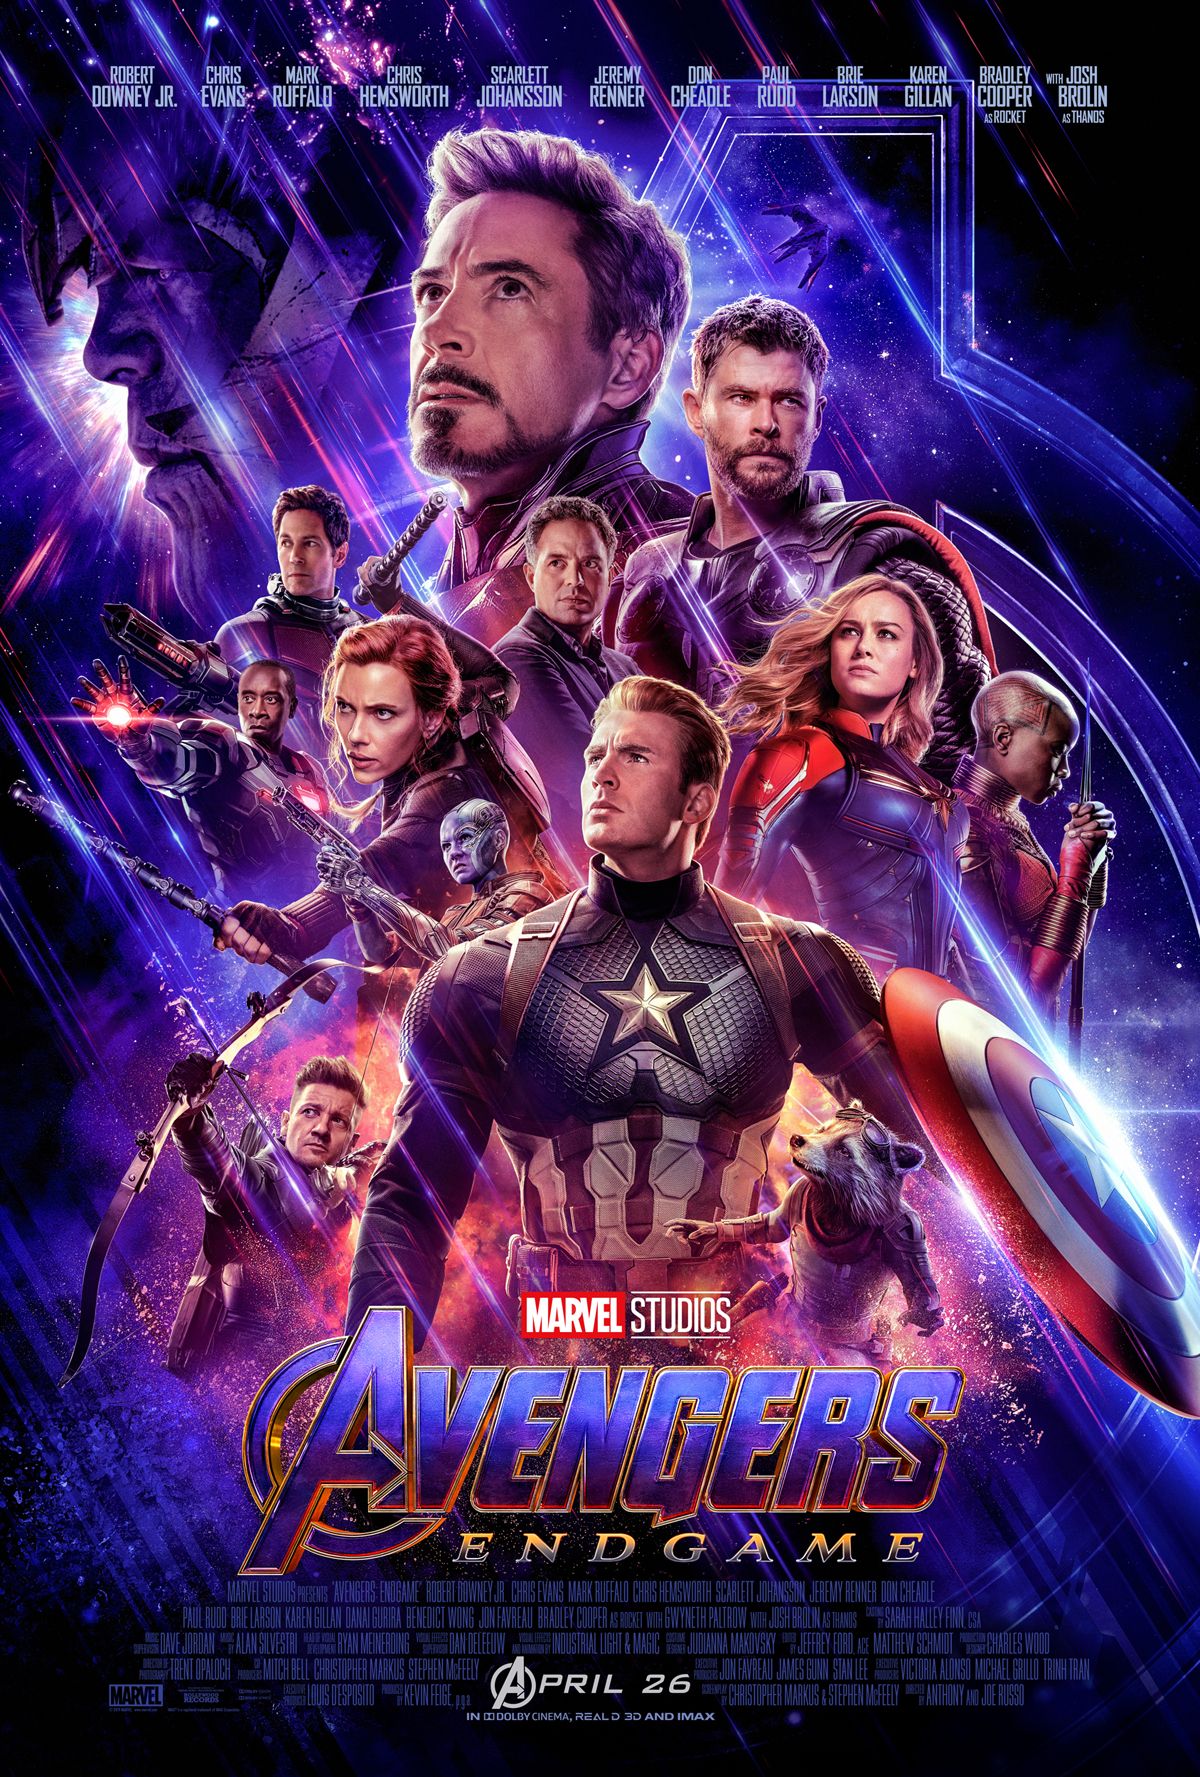 Capitán América, Iron Man, Thor y el resto de los Vengadores en Vengadores: Endgame